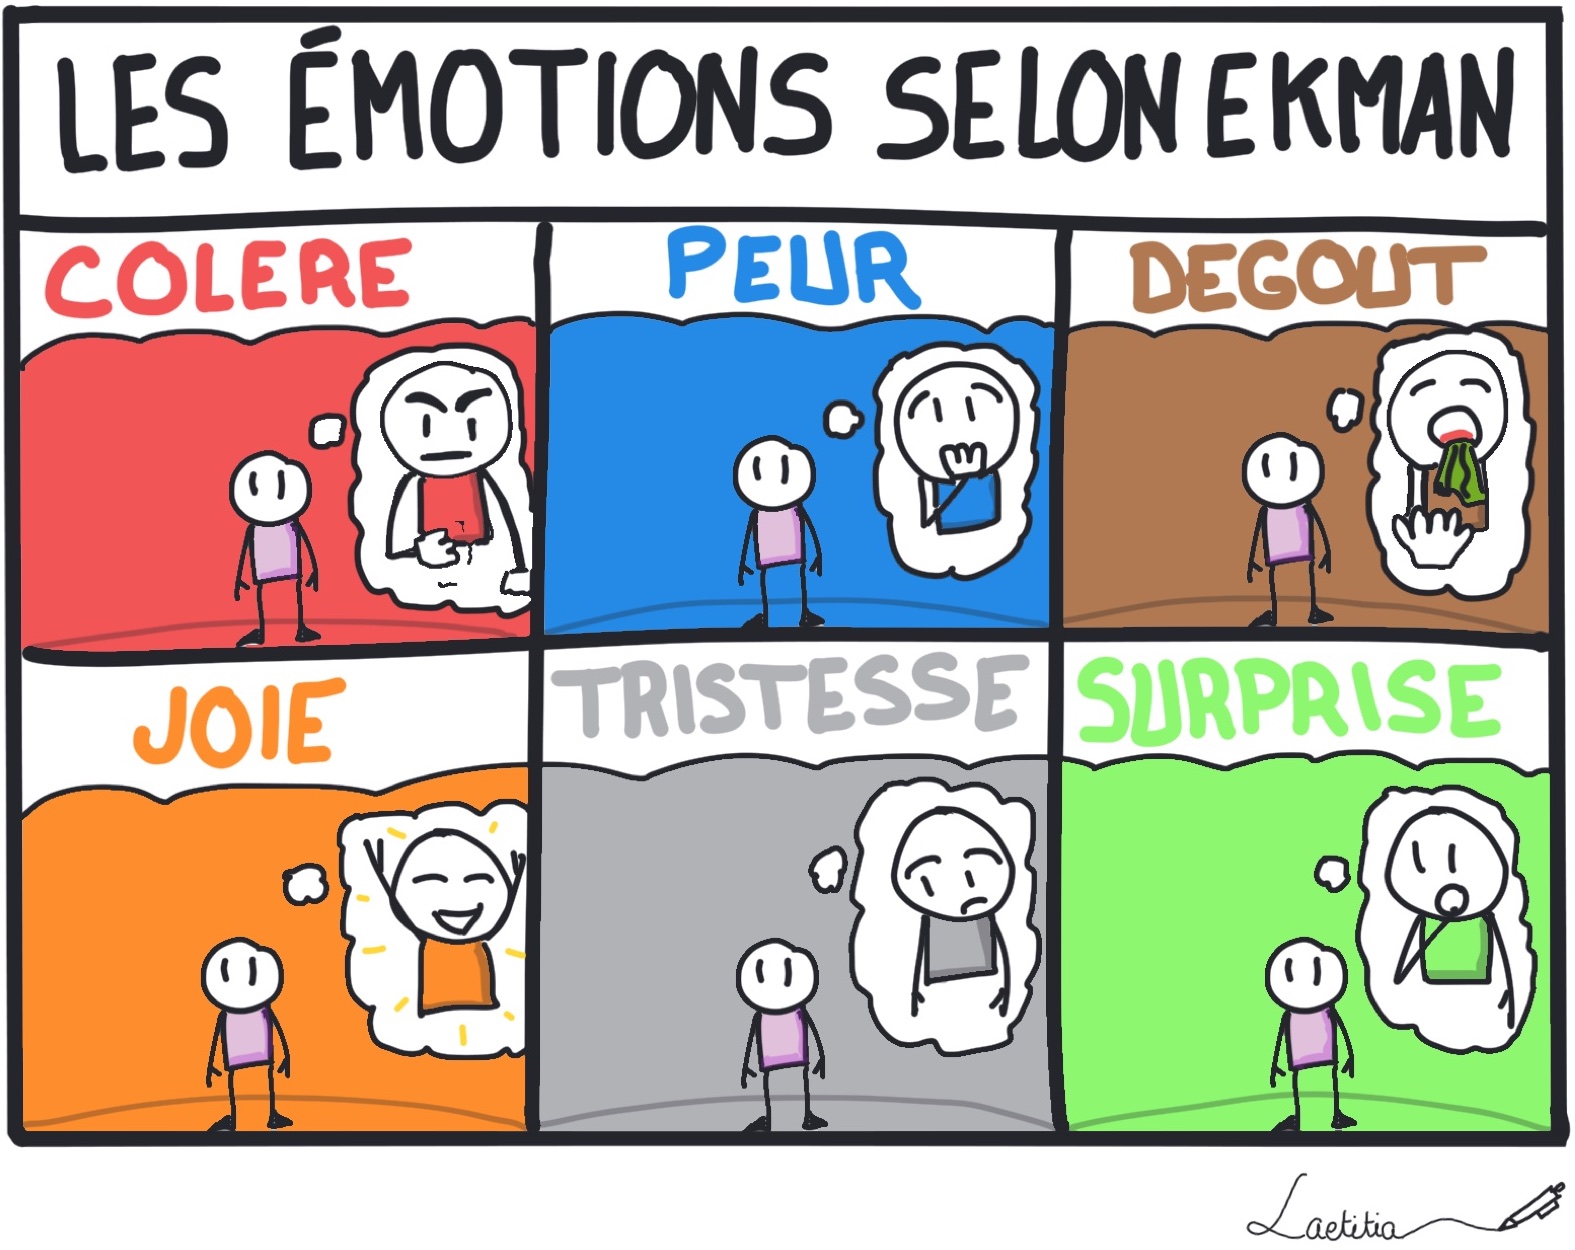 Les émotions selon EKMAN